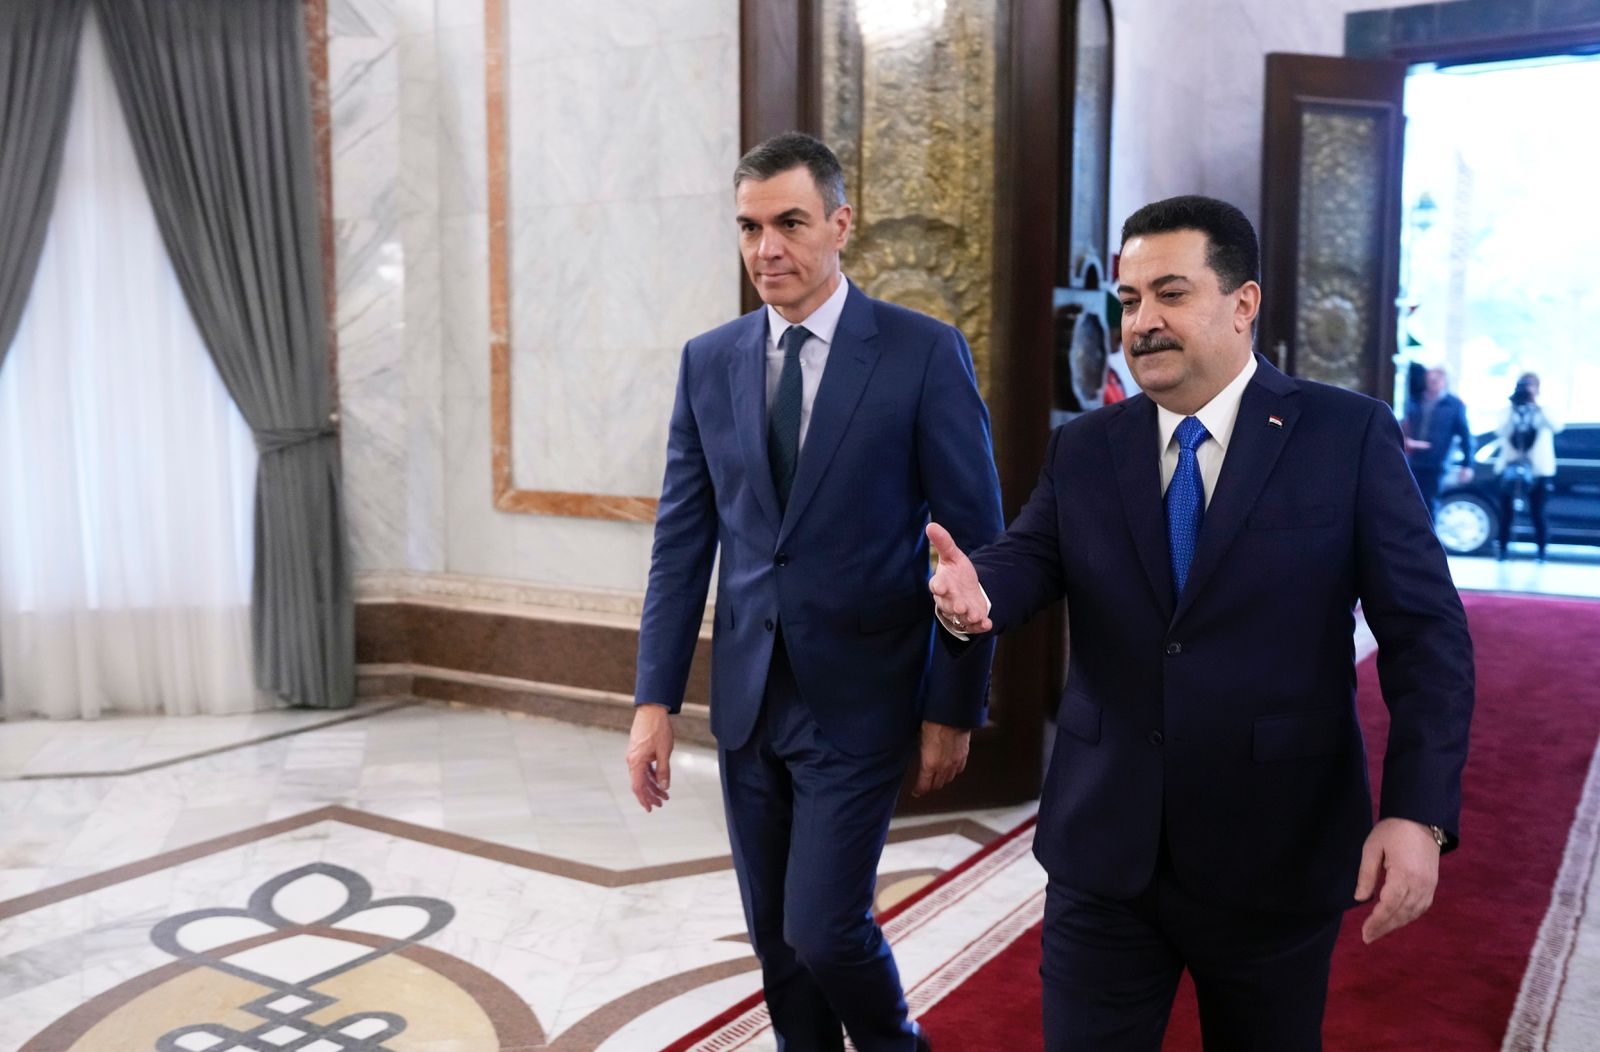 سانشيز: إسبانيا ستستمر بالتزامها في الحفاظ على وحدة وسيادة وأمن واستقرار العراق